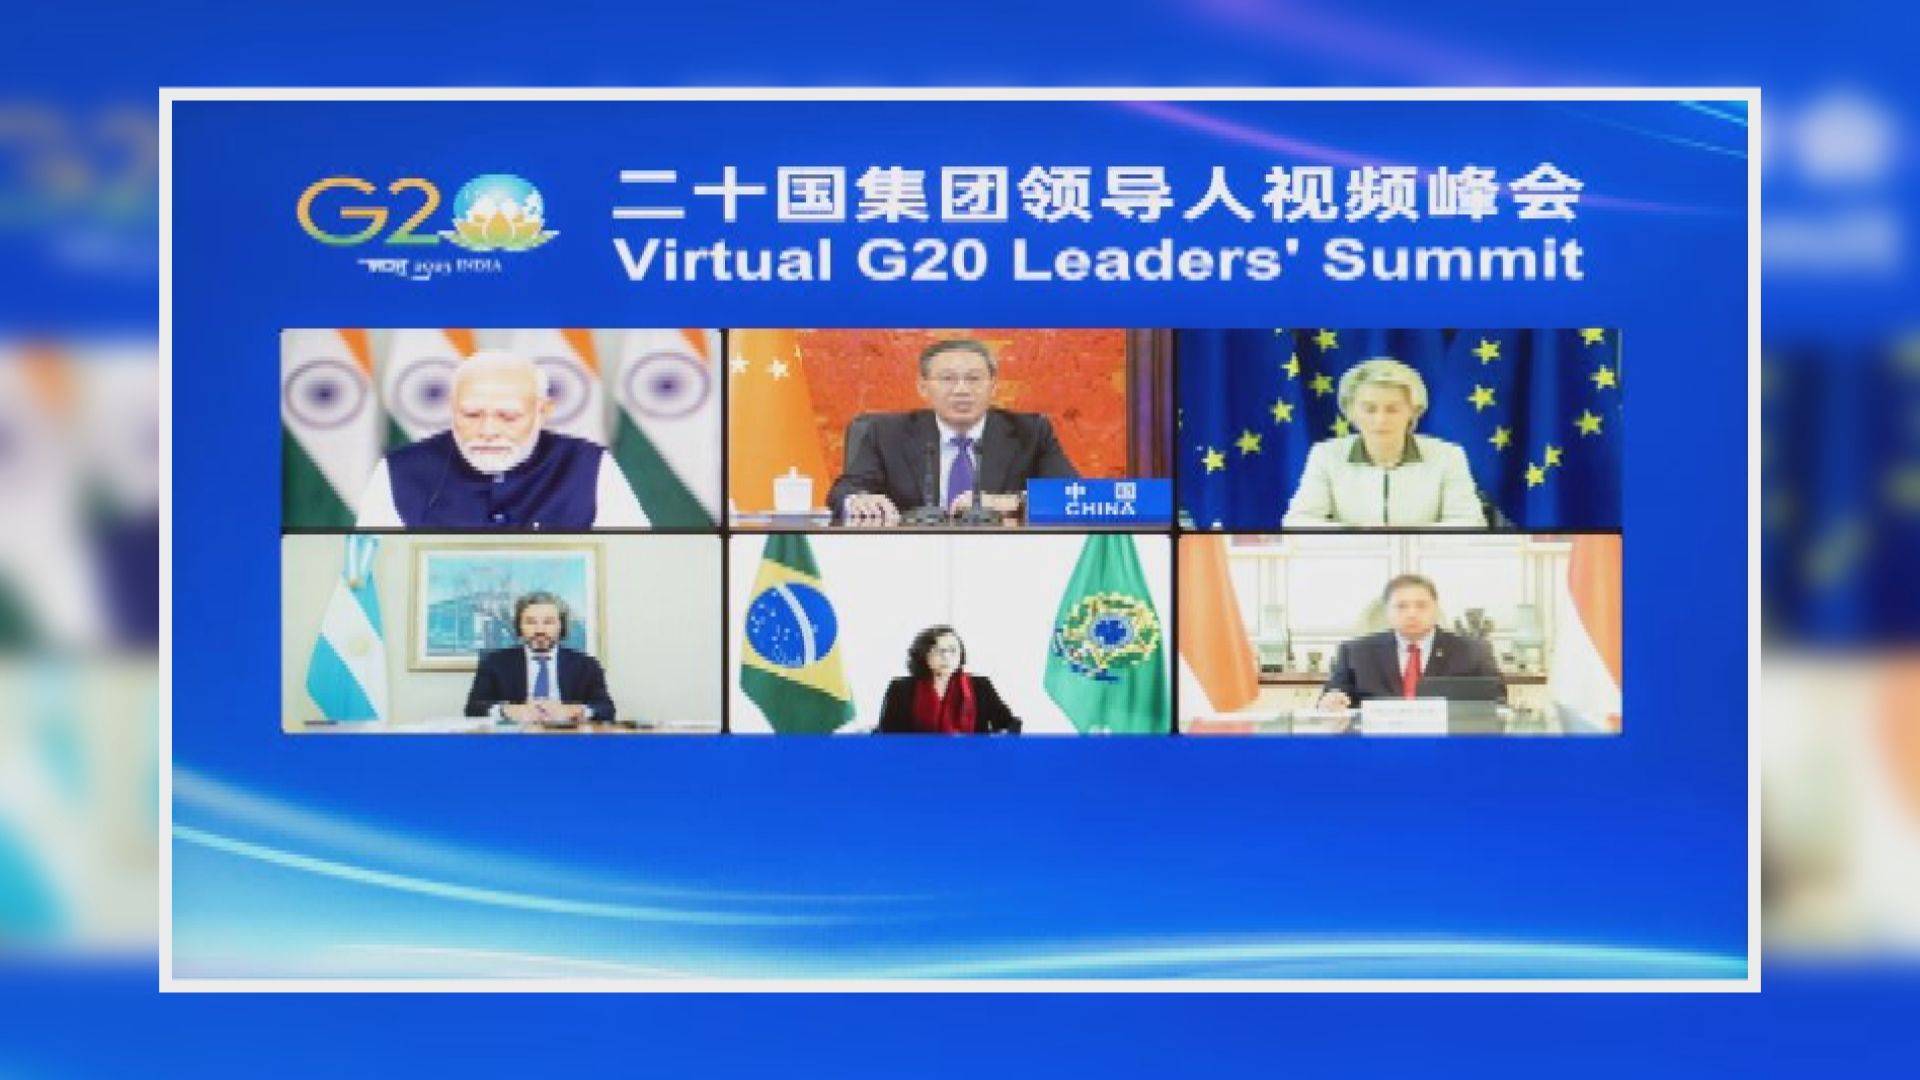 G20召開視像峰會 李強及普京等領袖與會